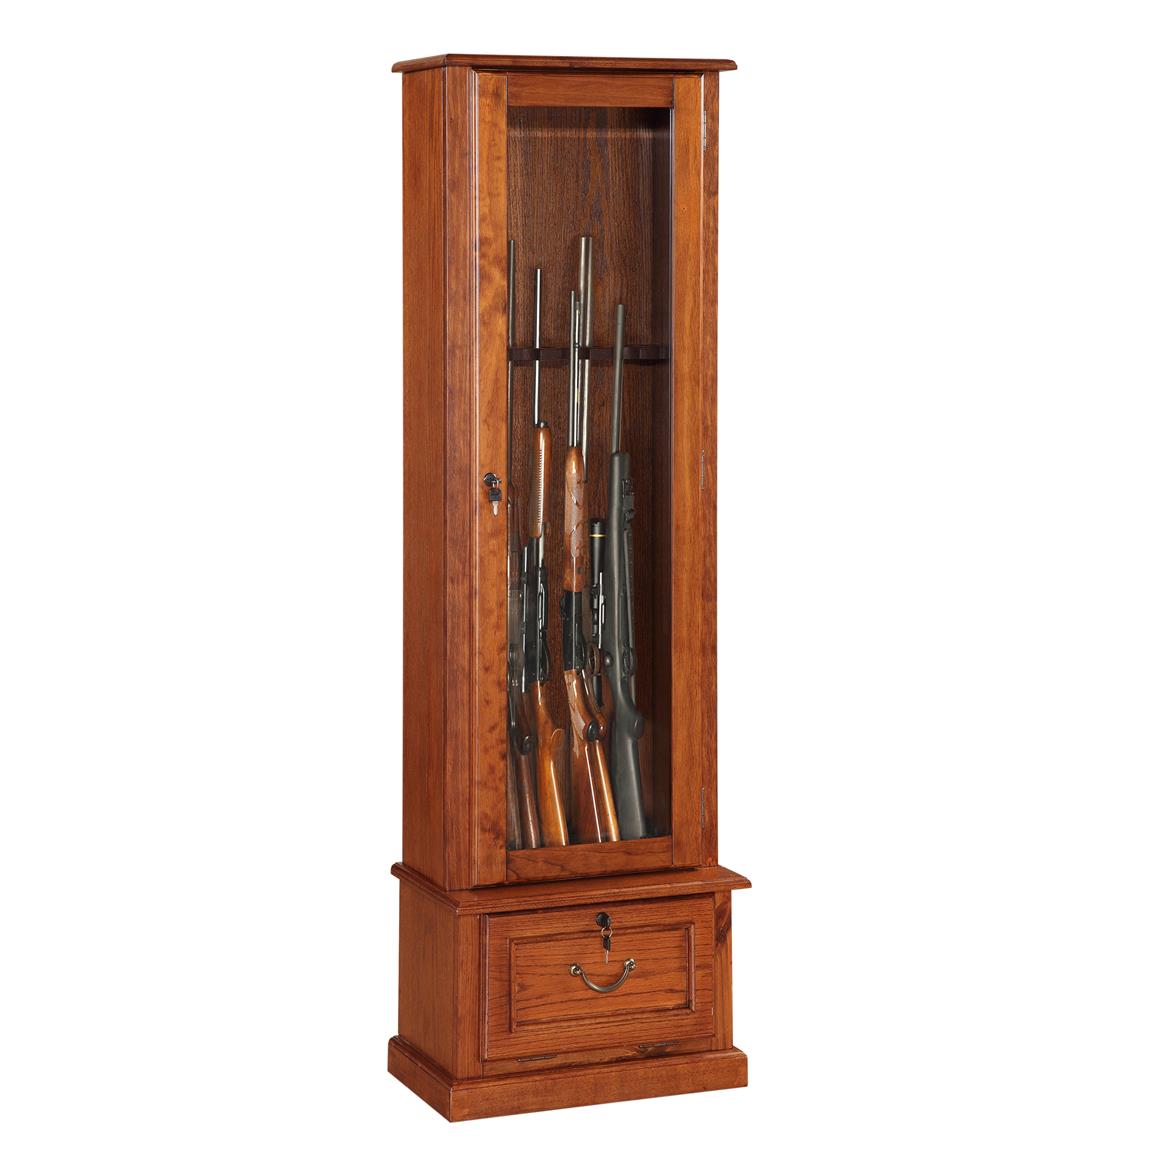 8 Gun Cabinet, American Furniture Classics - 654914, Gun ...